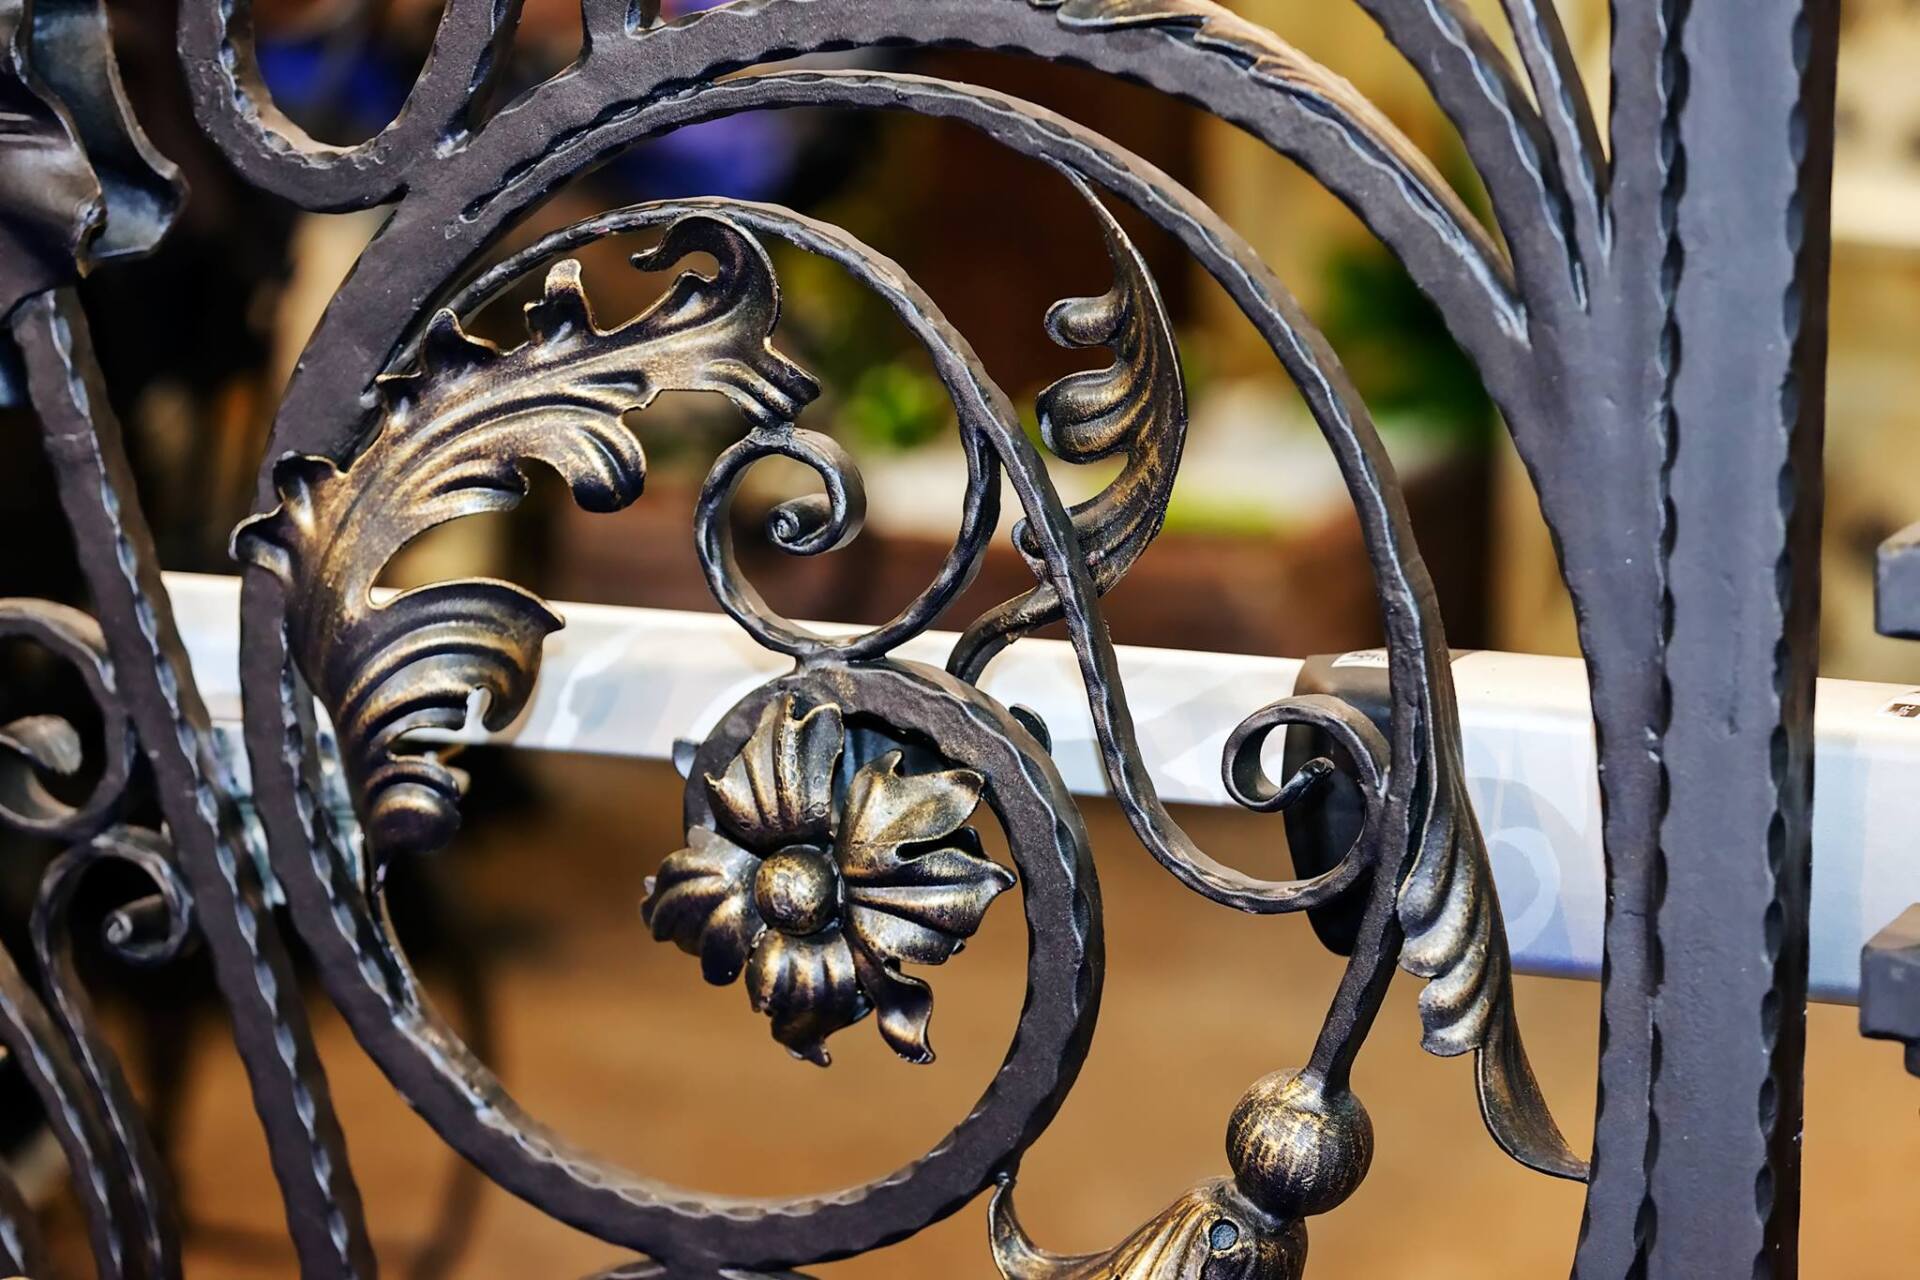 Dettaglio della decorazione di una ringhiera in ferro battuto